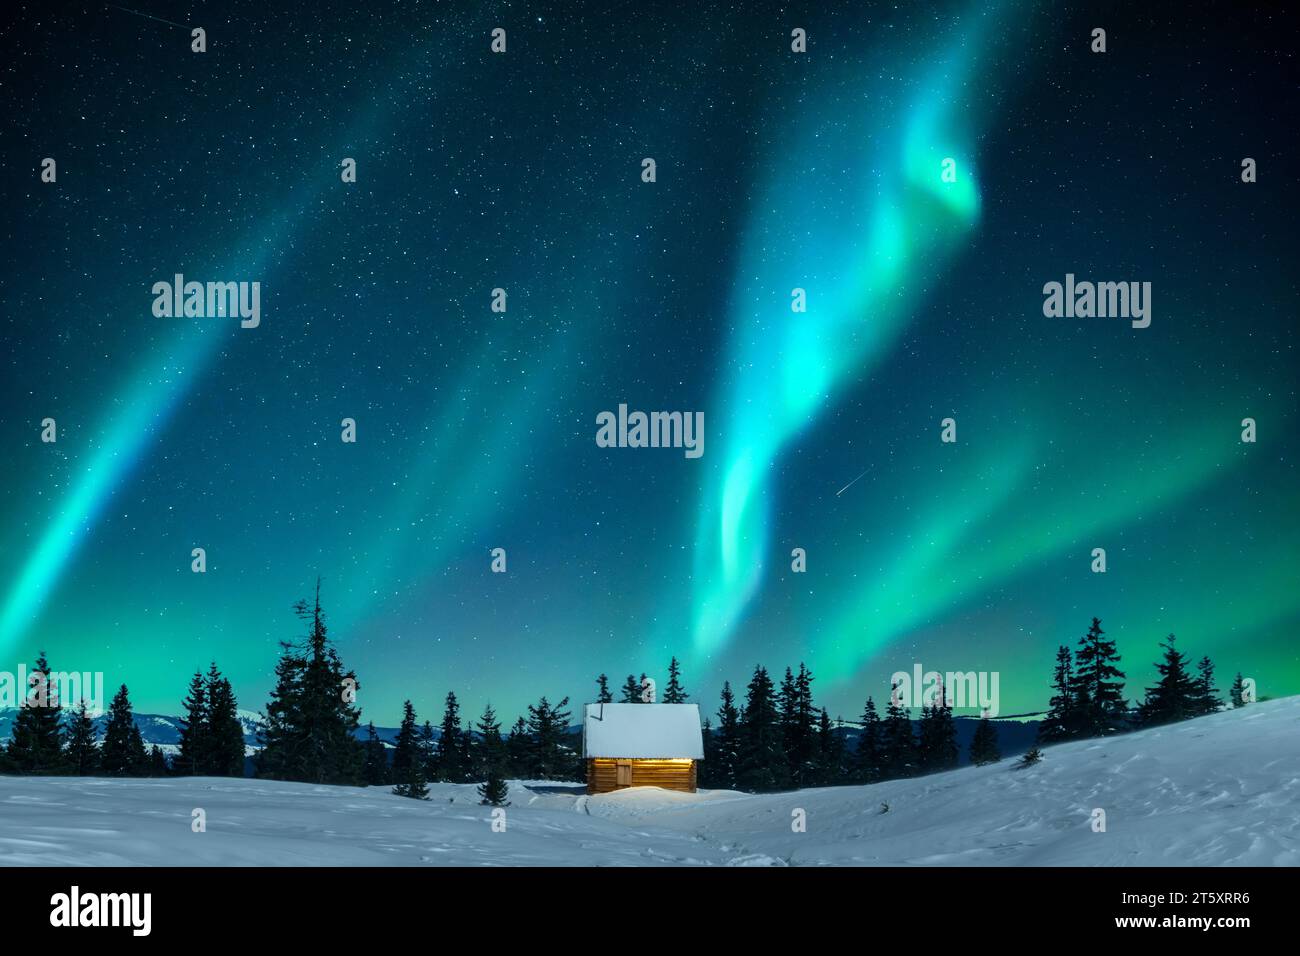 Una capanna annidata tra abeti innevati su una radura di montagna in inverno. Aurora boreale. Aurora boreale nella foresta invernale. Concetto di vacanze natalizie e vacanze invernali Foto Stock